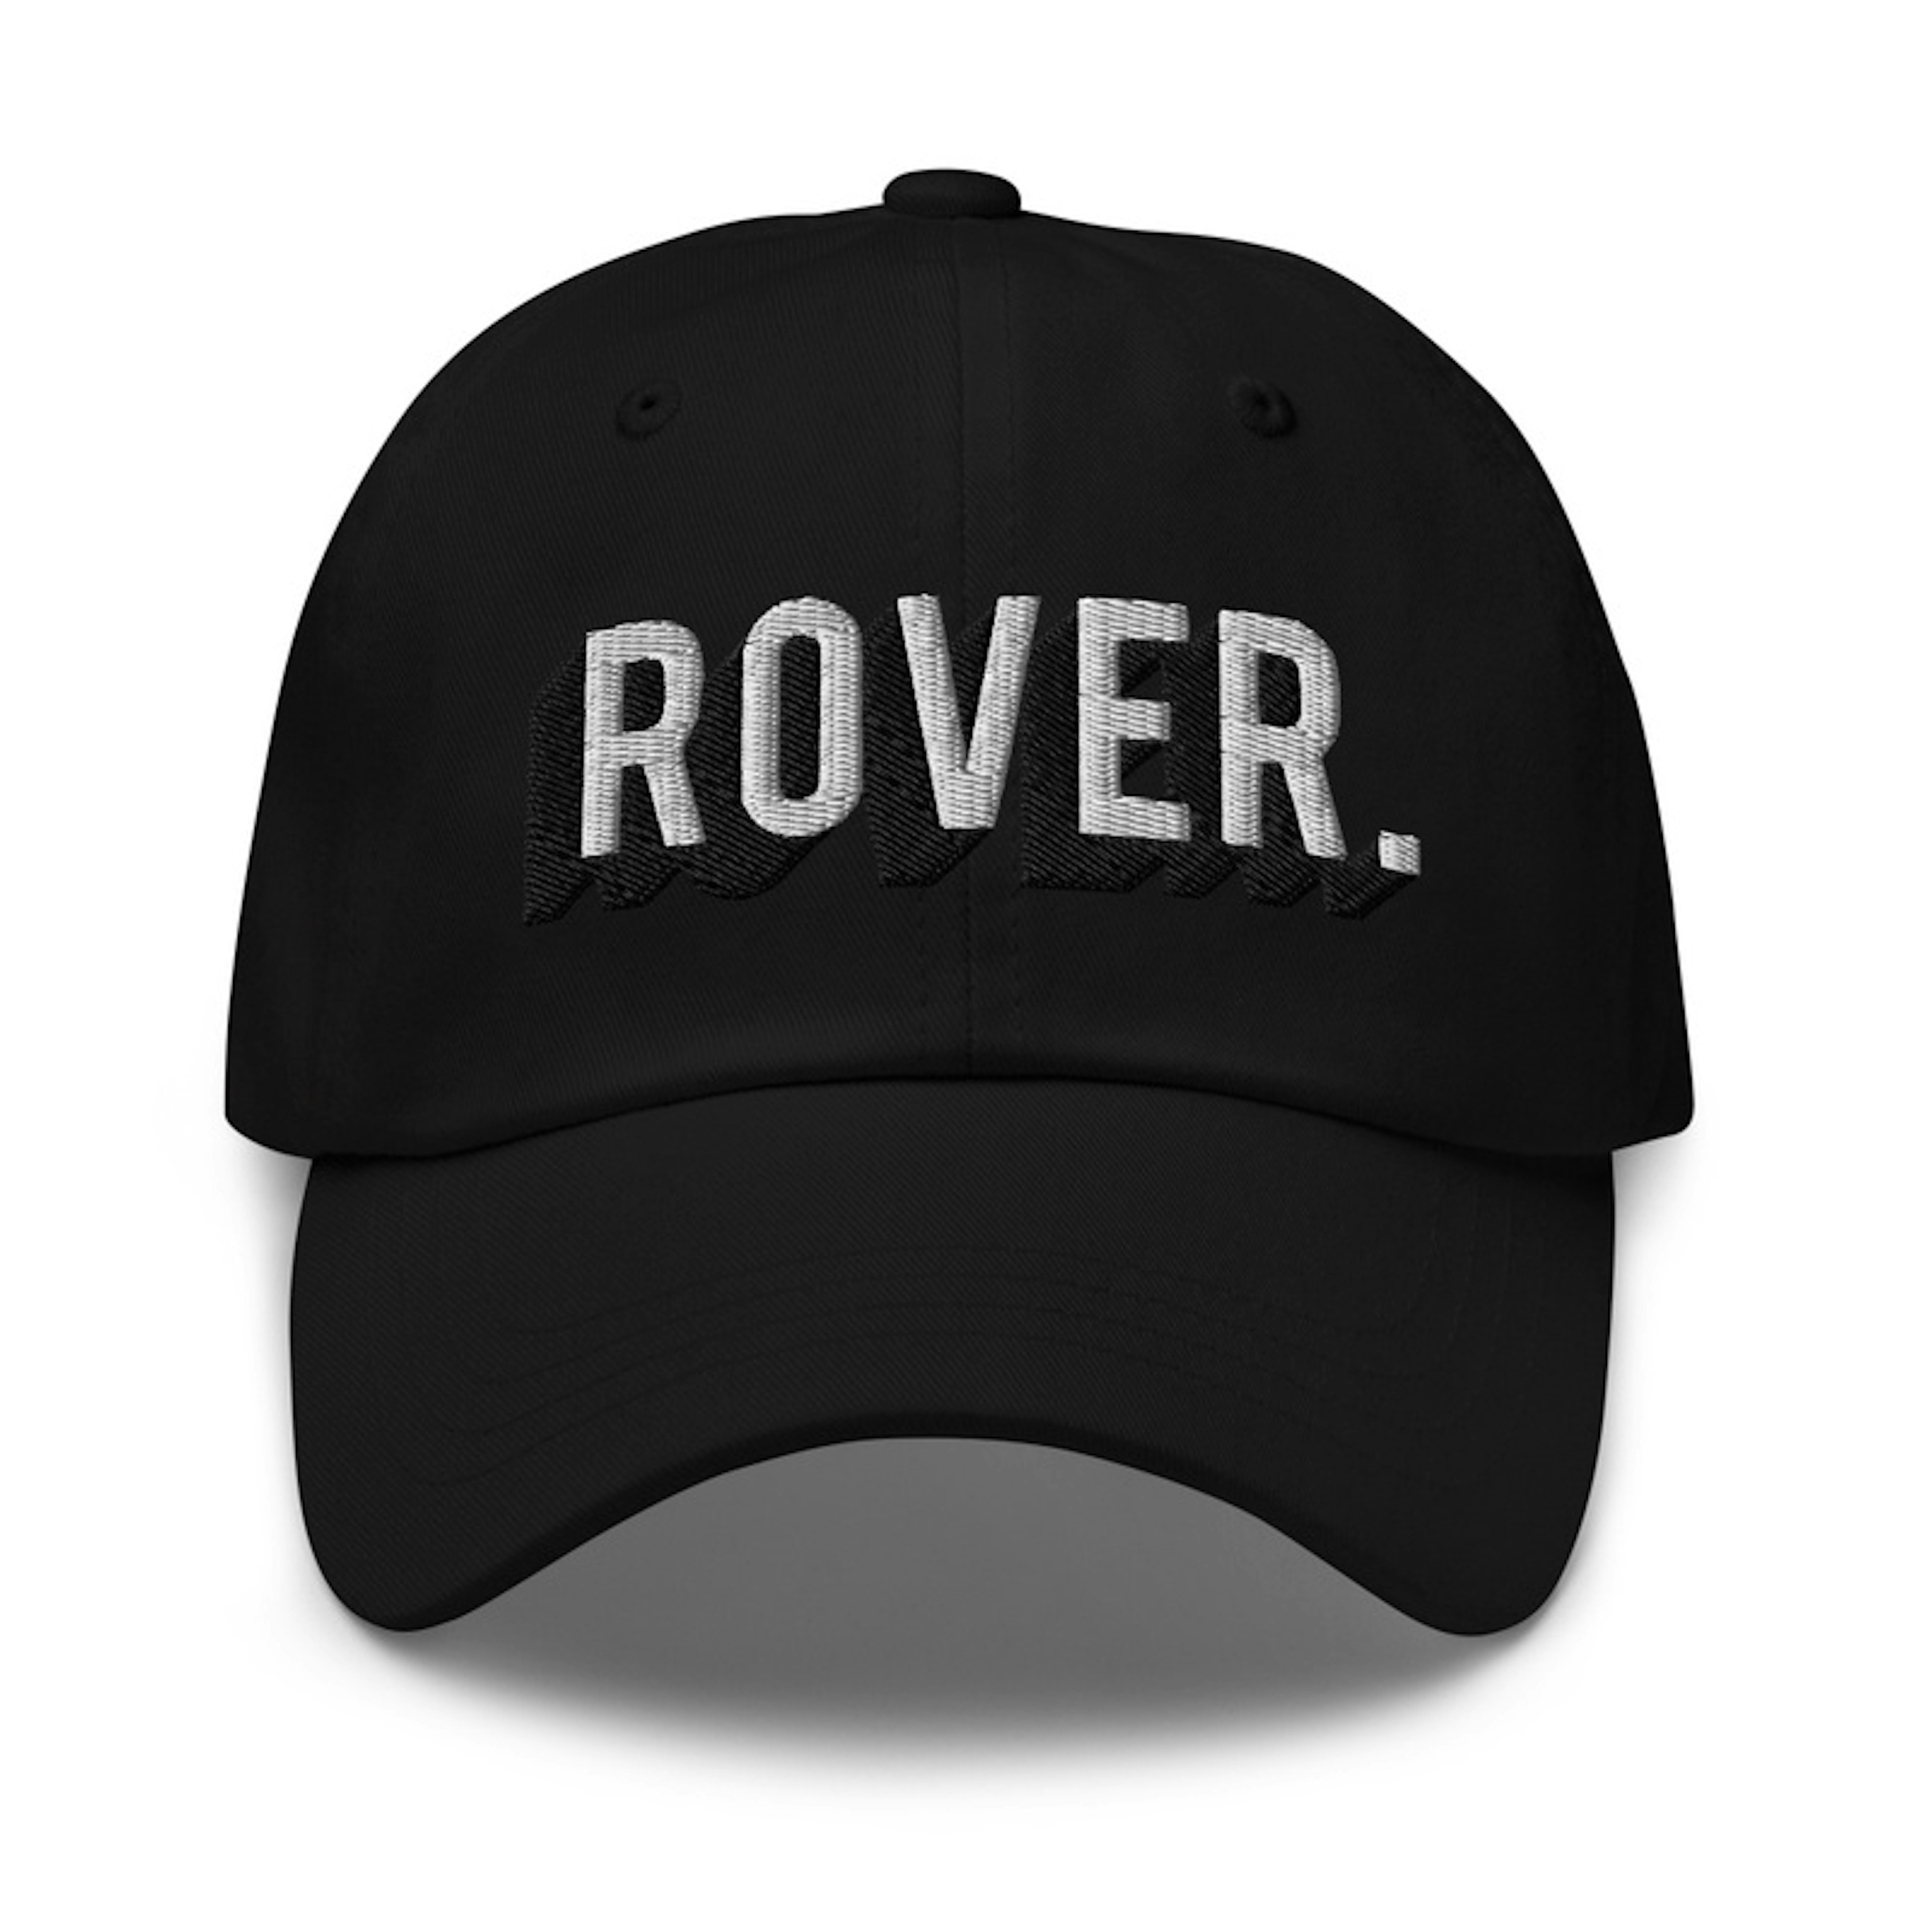 Rover BnW